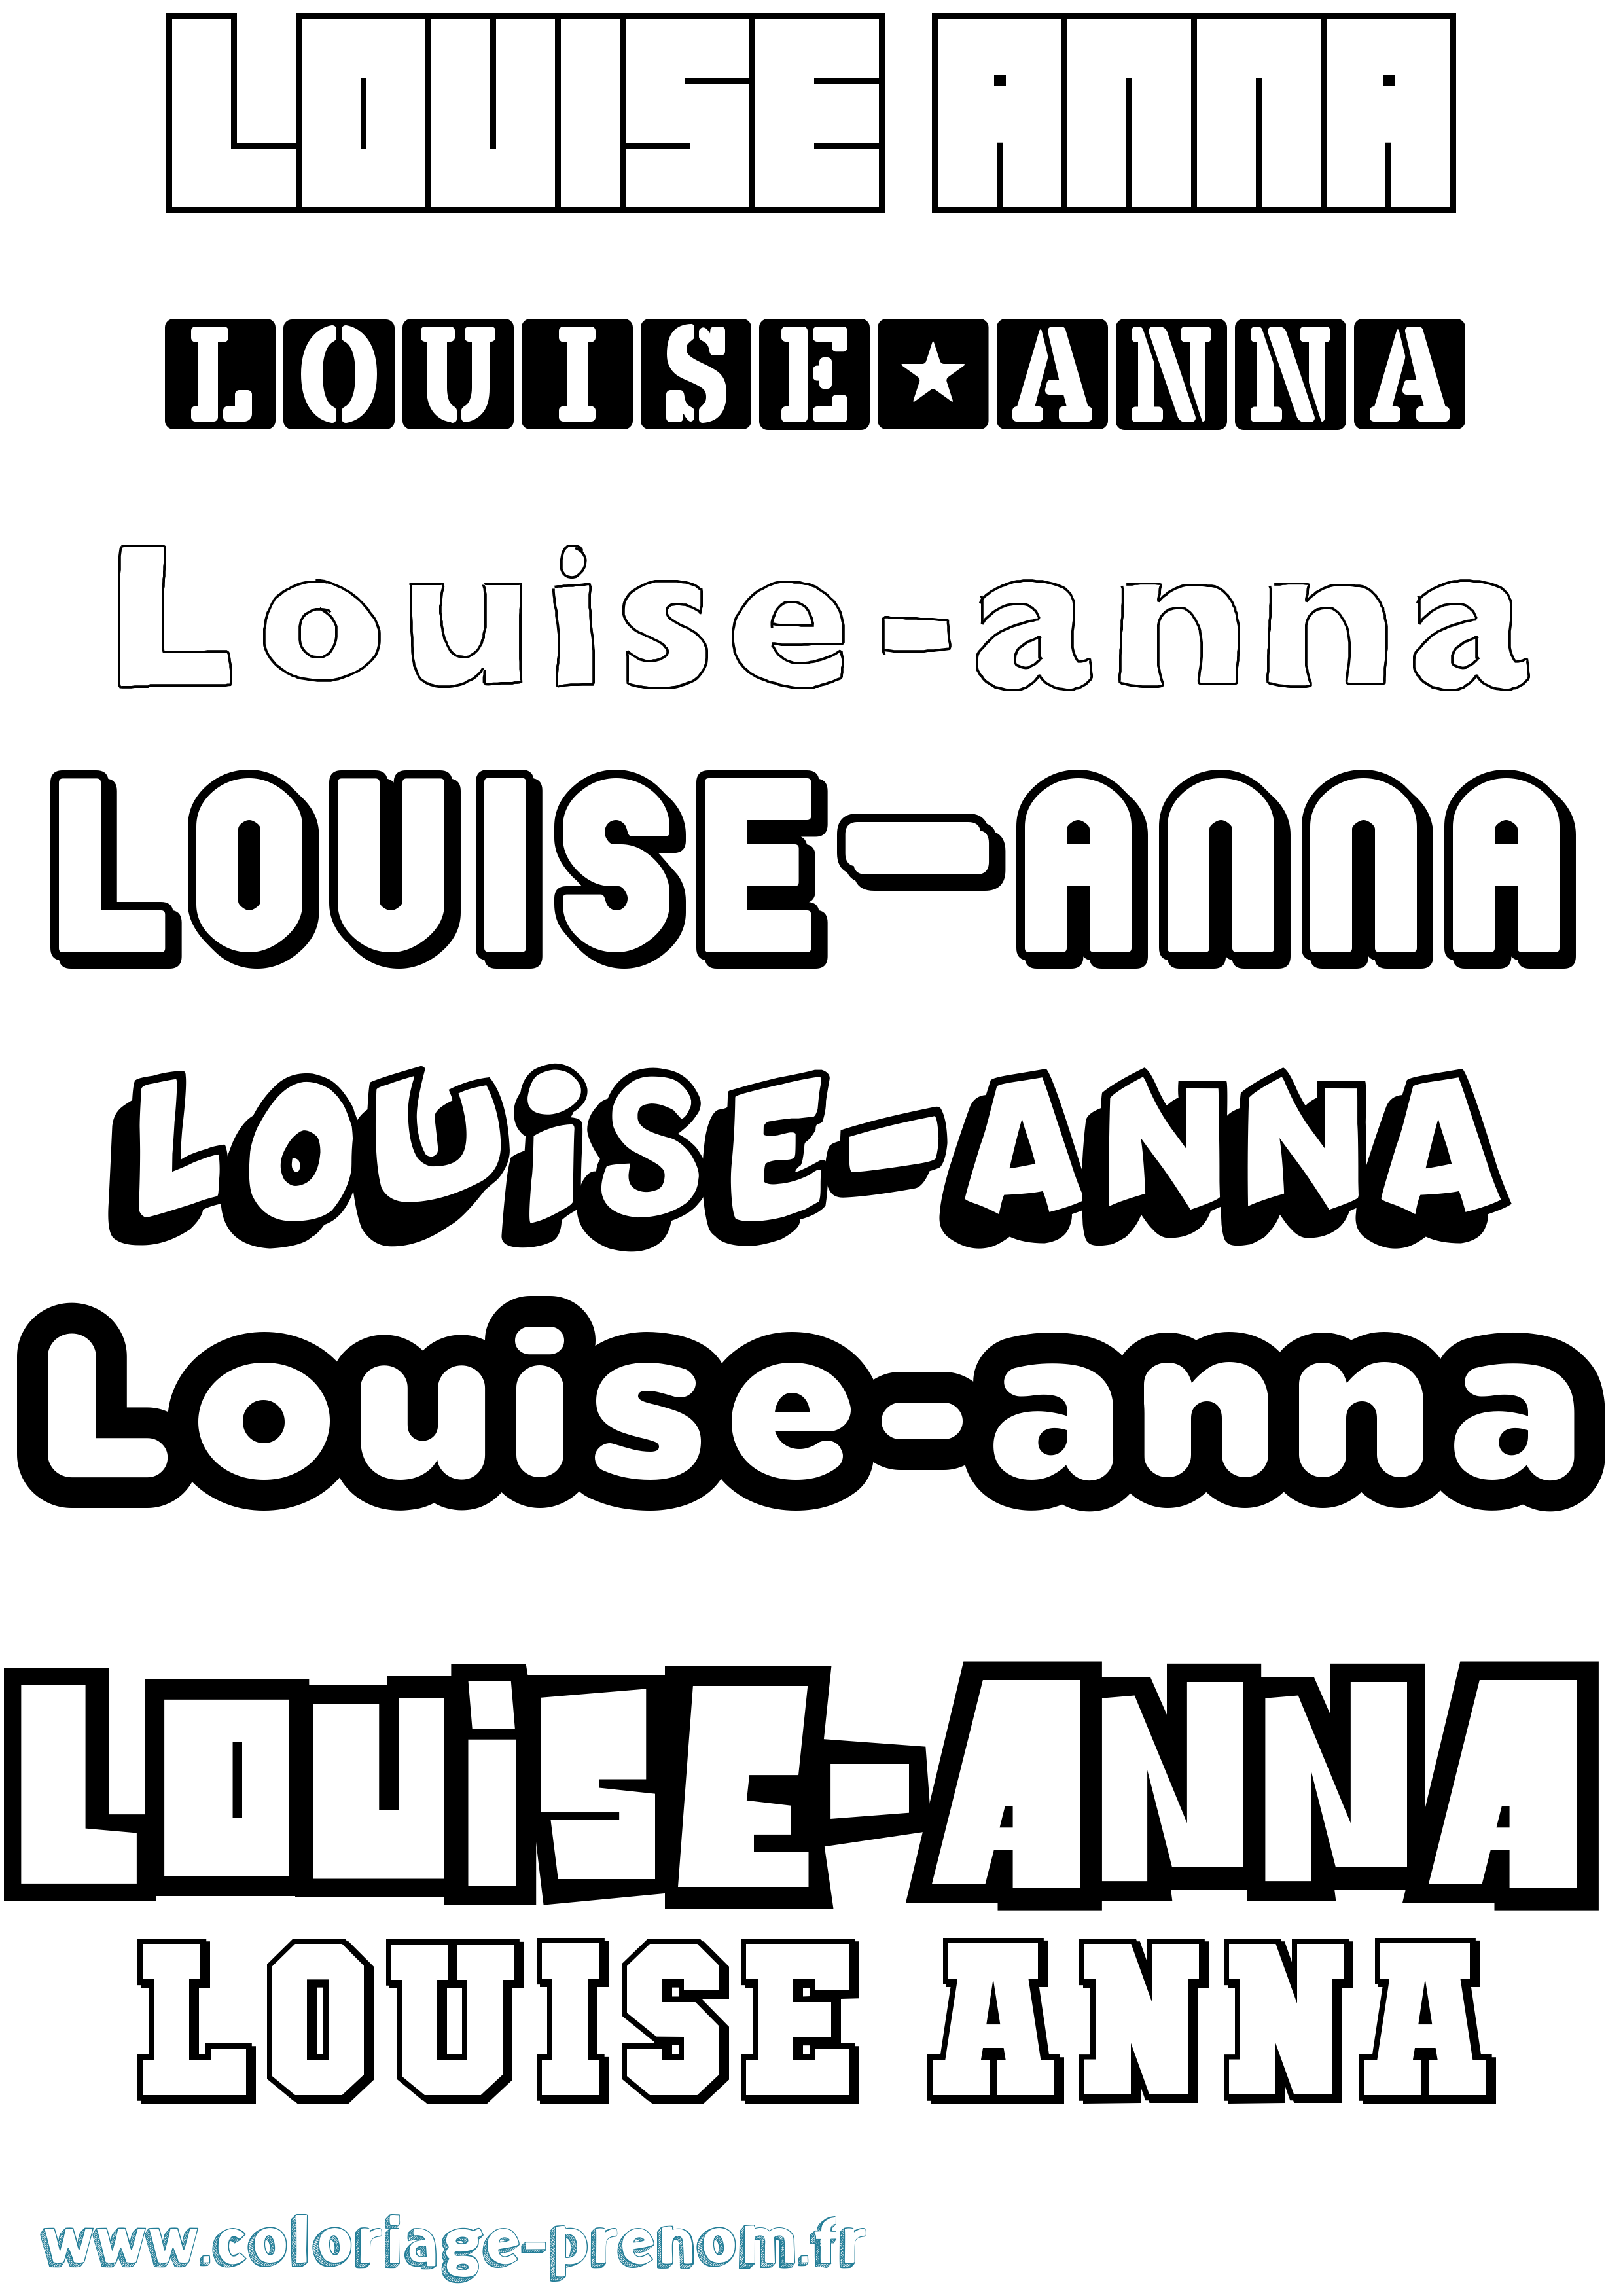 Coloriage prénom Louise-Anna Simple